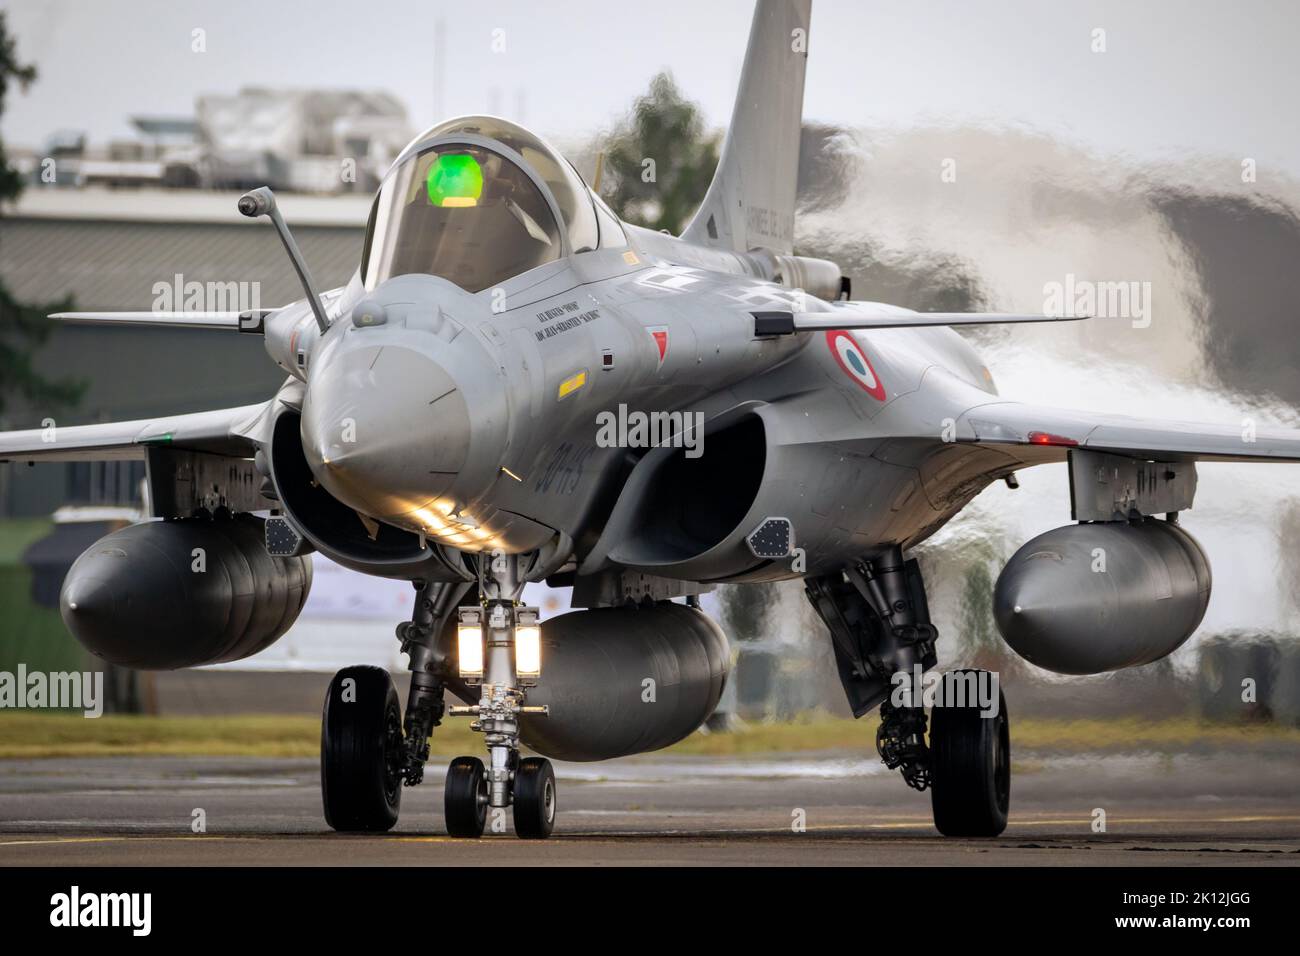 Avion de chasse Dassault Rafale de la Force aérienne française en train de rouler à la base aérienne de Mont-de-Marsan. France - 17 mai 2019 Banque D'Images